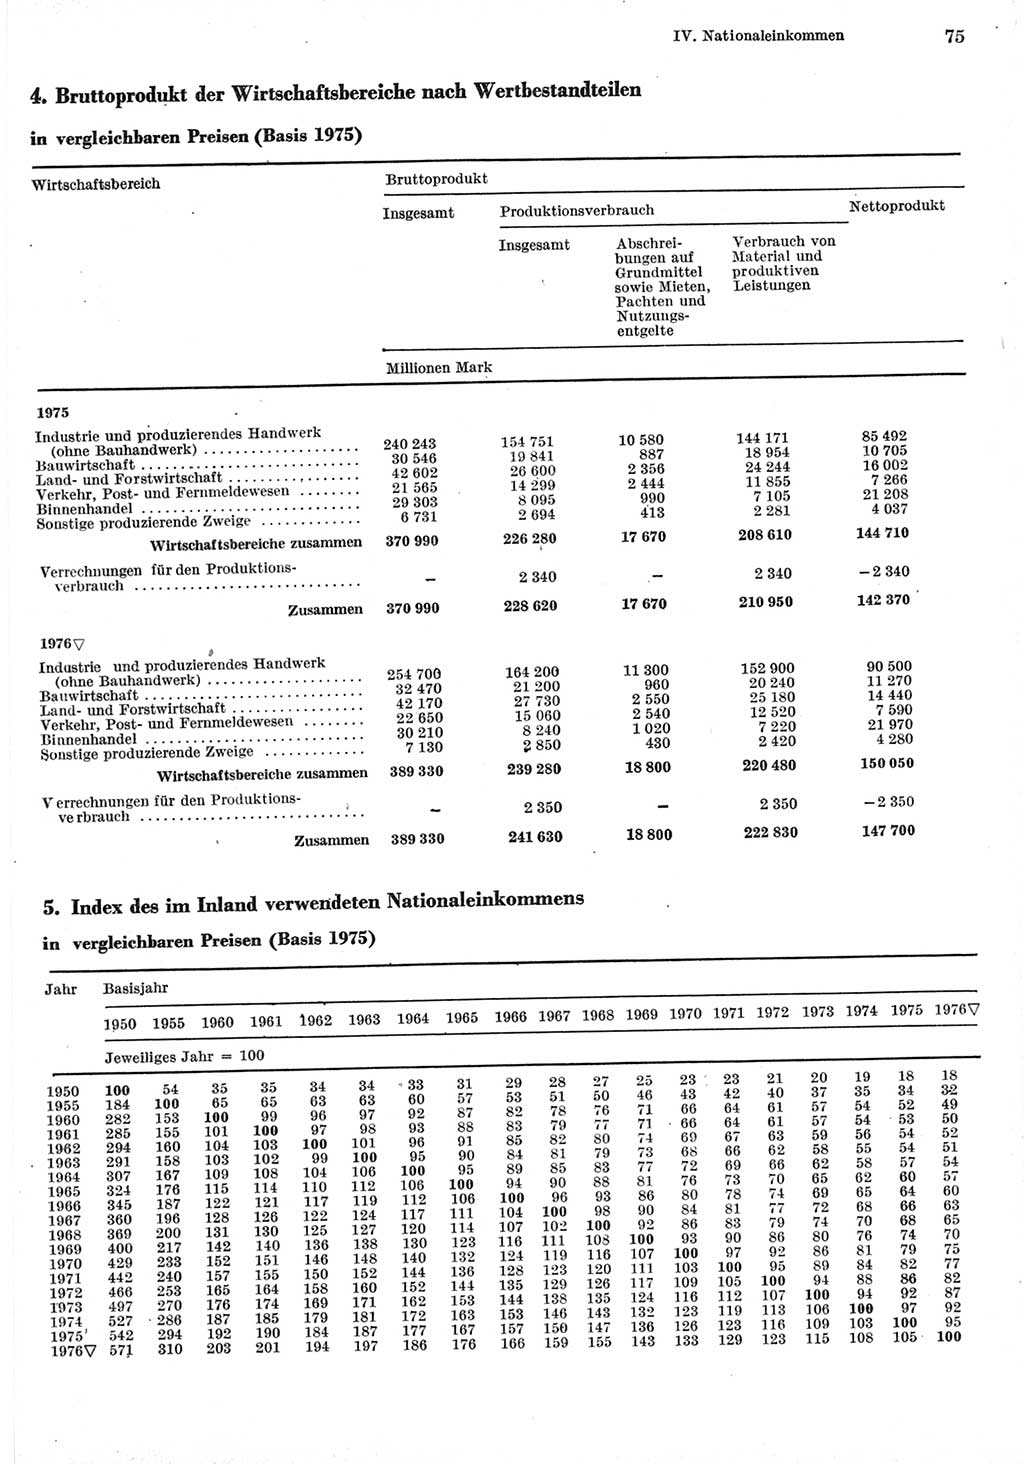 Statistisches Jahrbuch der Deutschen Demokratischen Republik (DDR) 1977, Seite 75 (Stat. Jb. DDR 1977, S. 75)